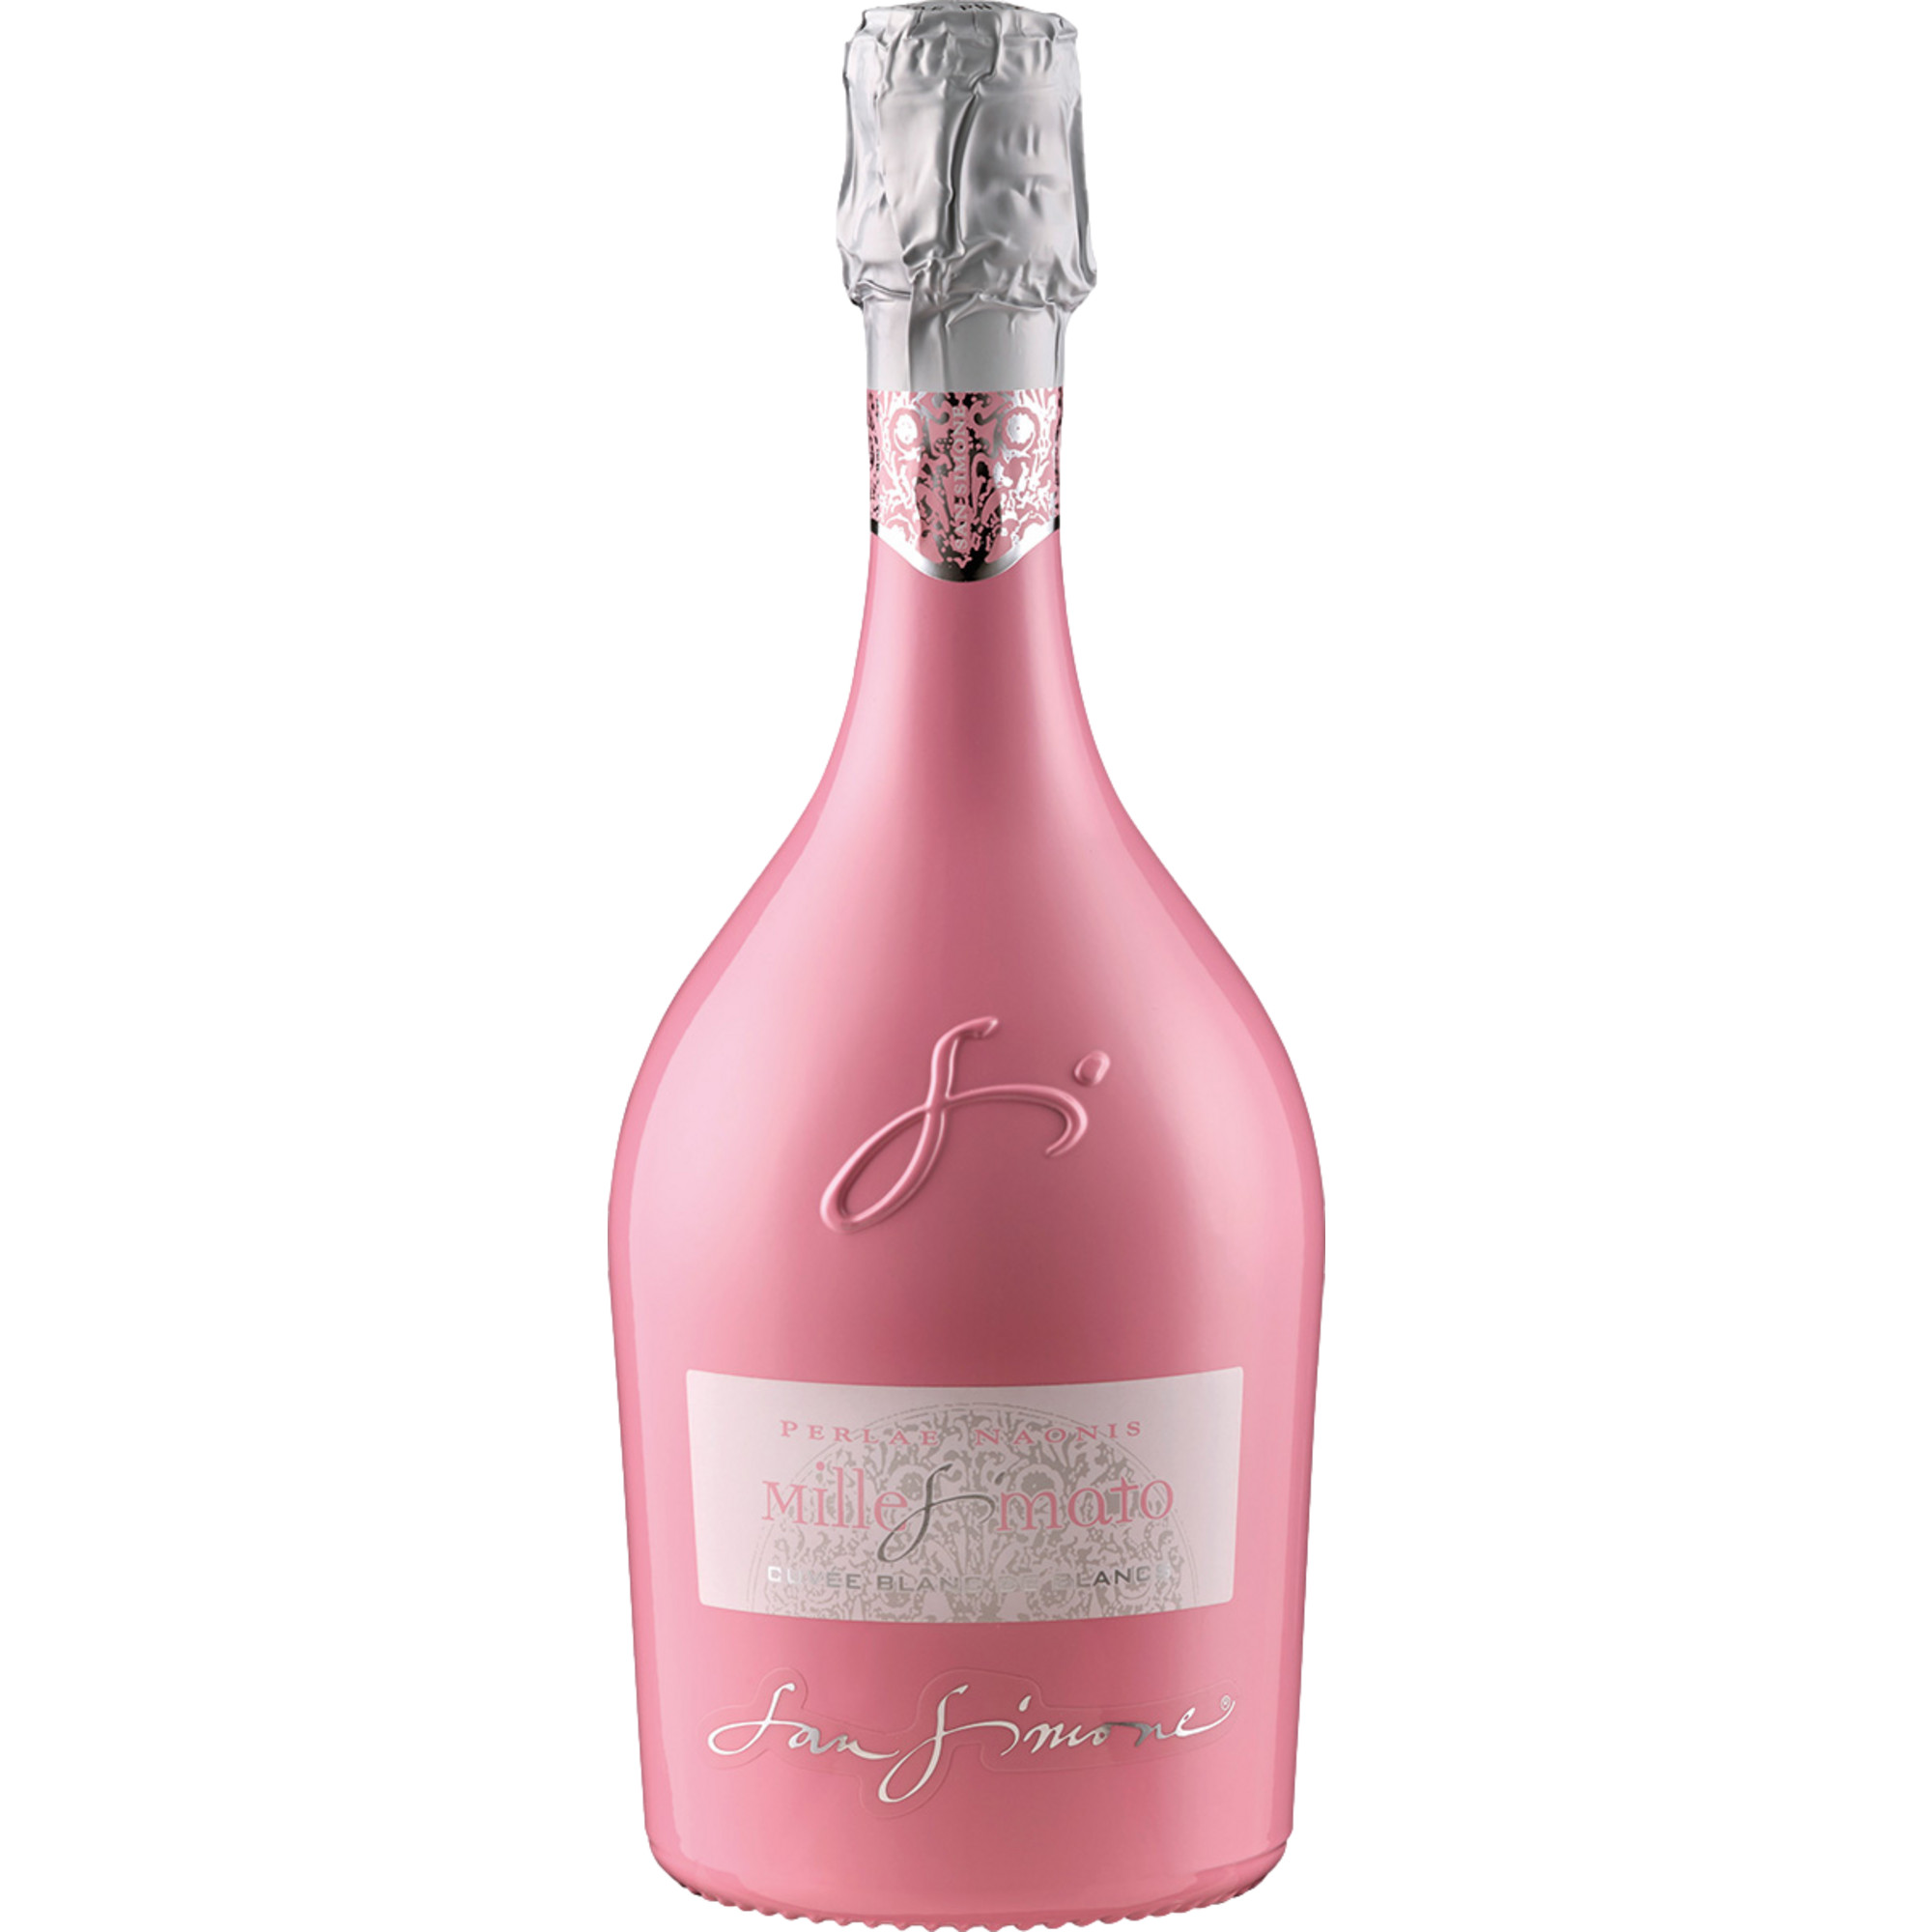 2021 Millesimato Cuvée Blanc de Blancs Pink